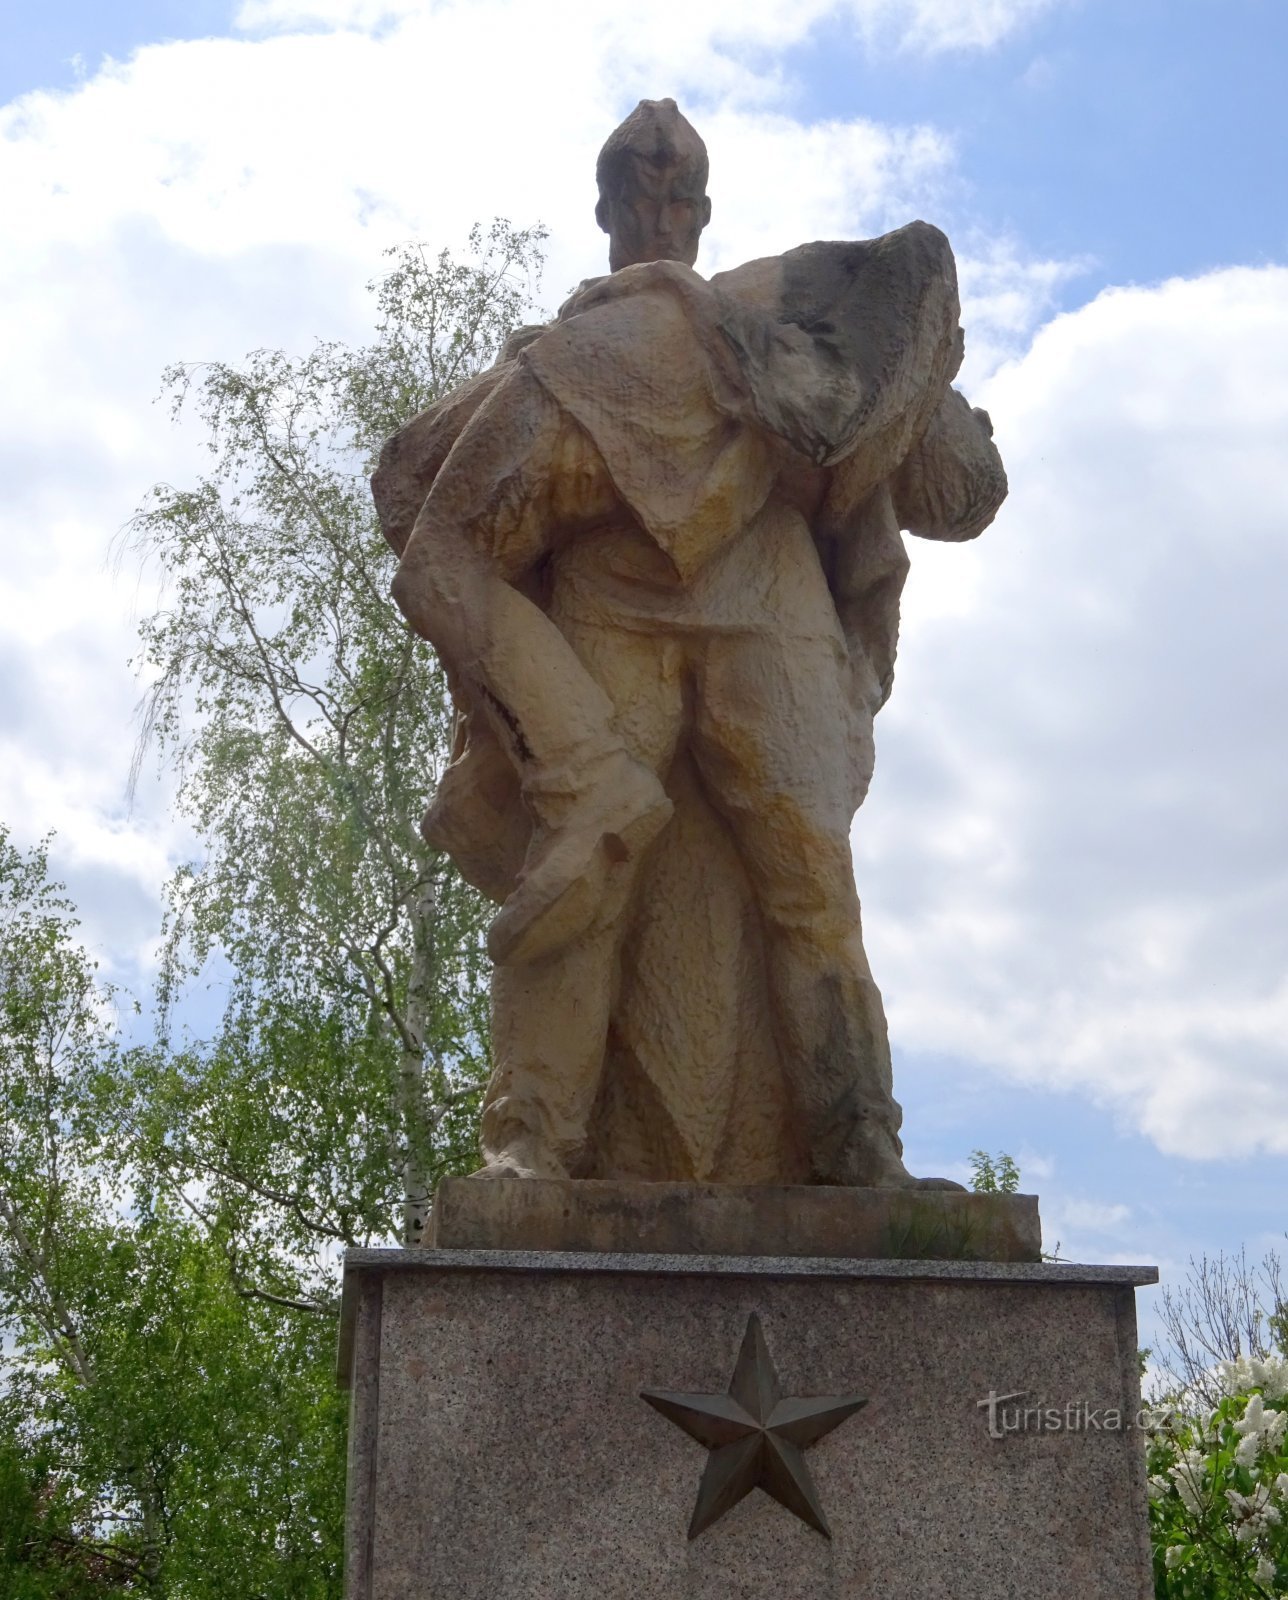 Klimkovice - monumento II. guerras mundiais